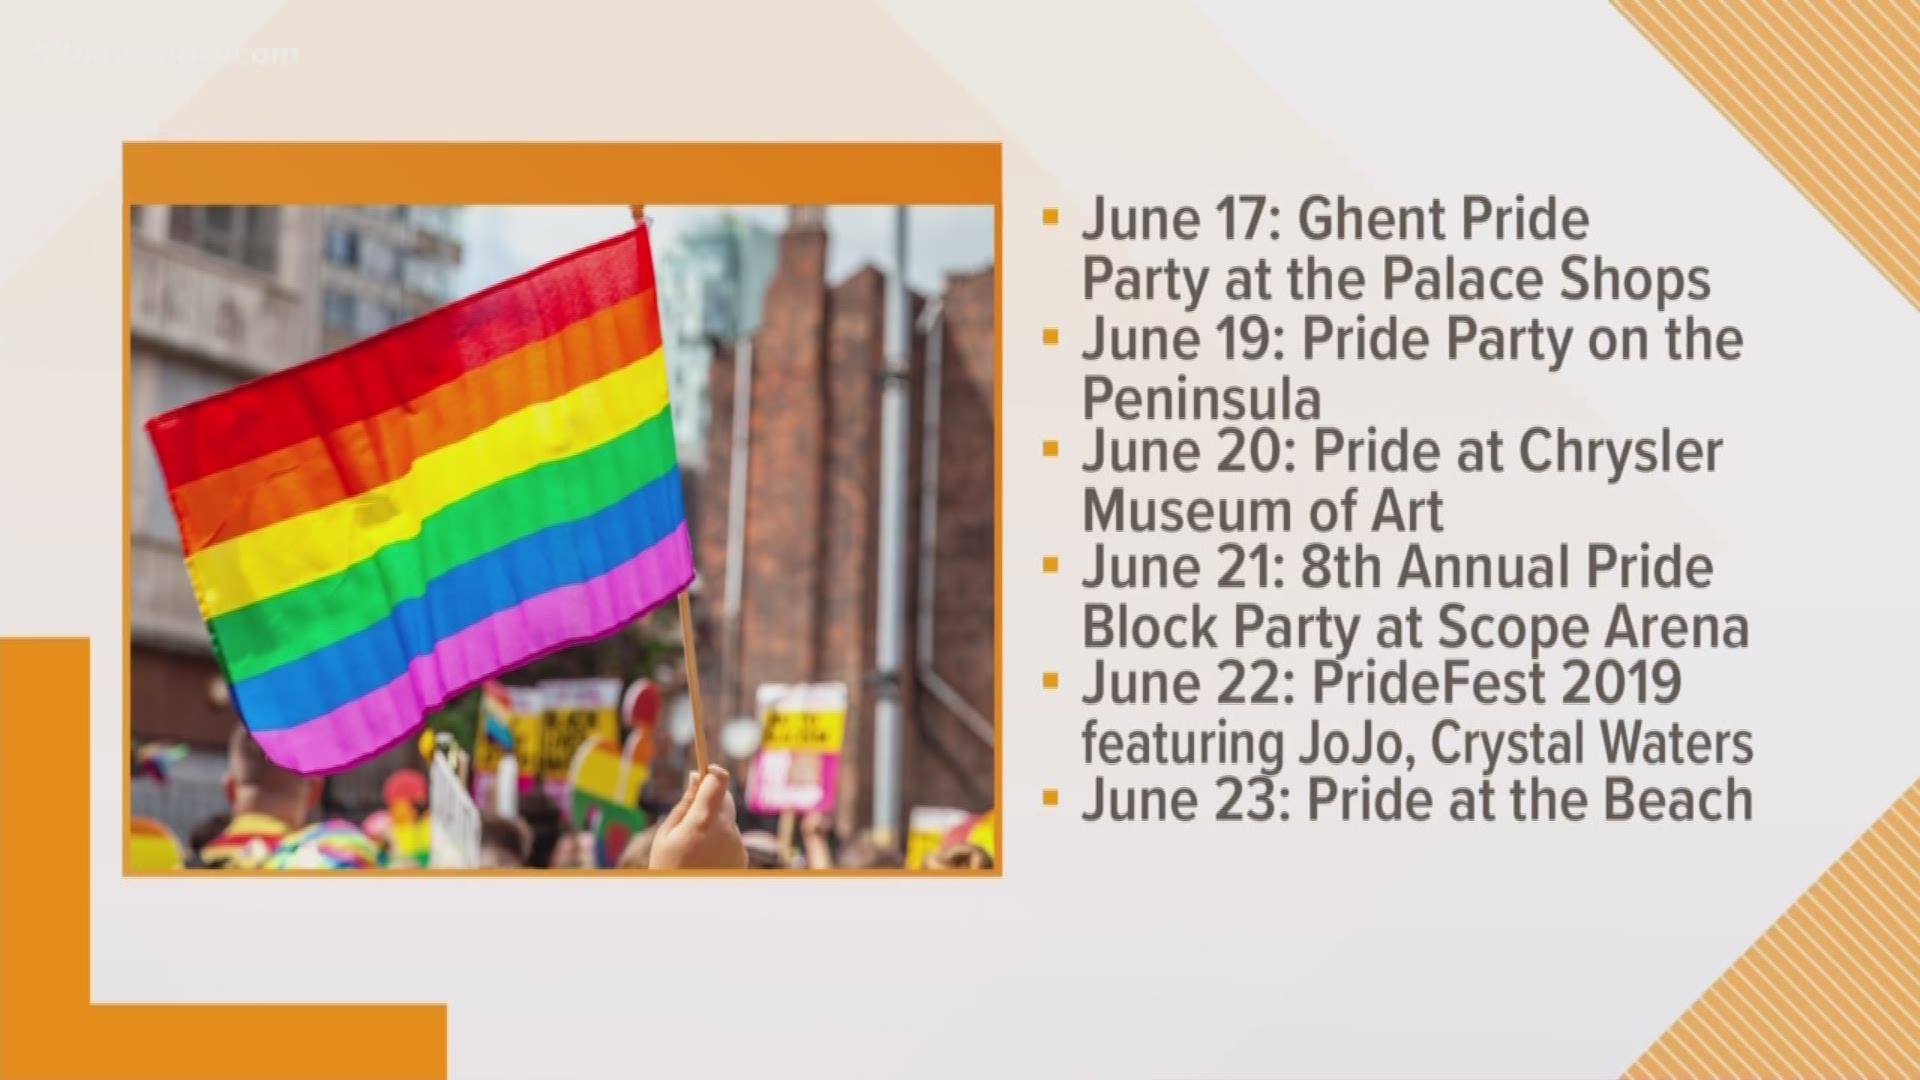 It's the 31st annual event for Hampton Roads Pride.